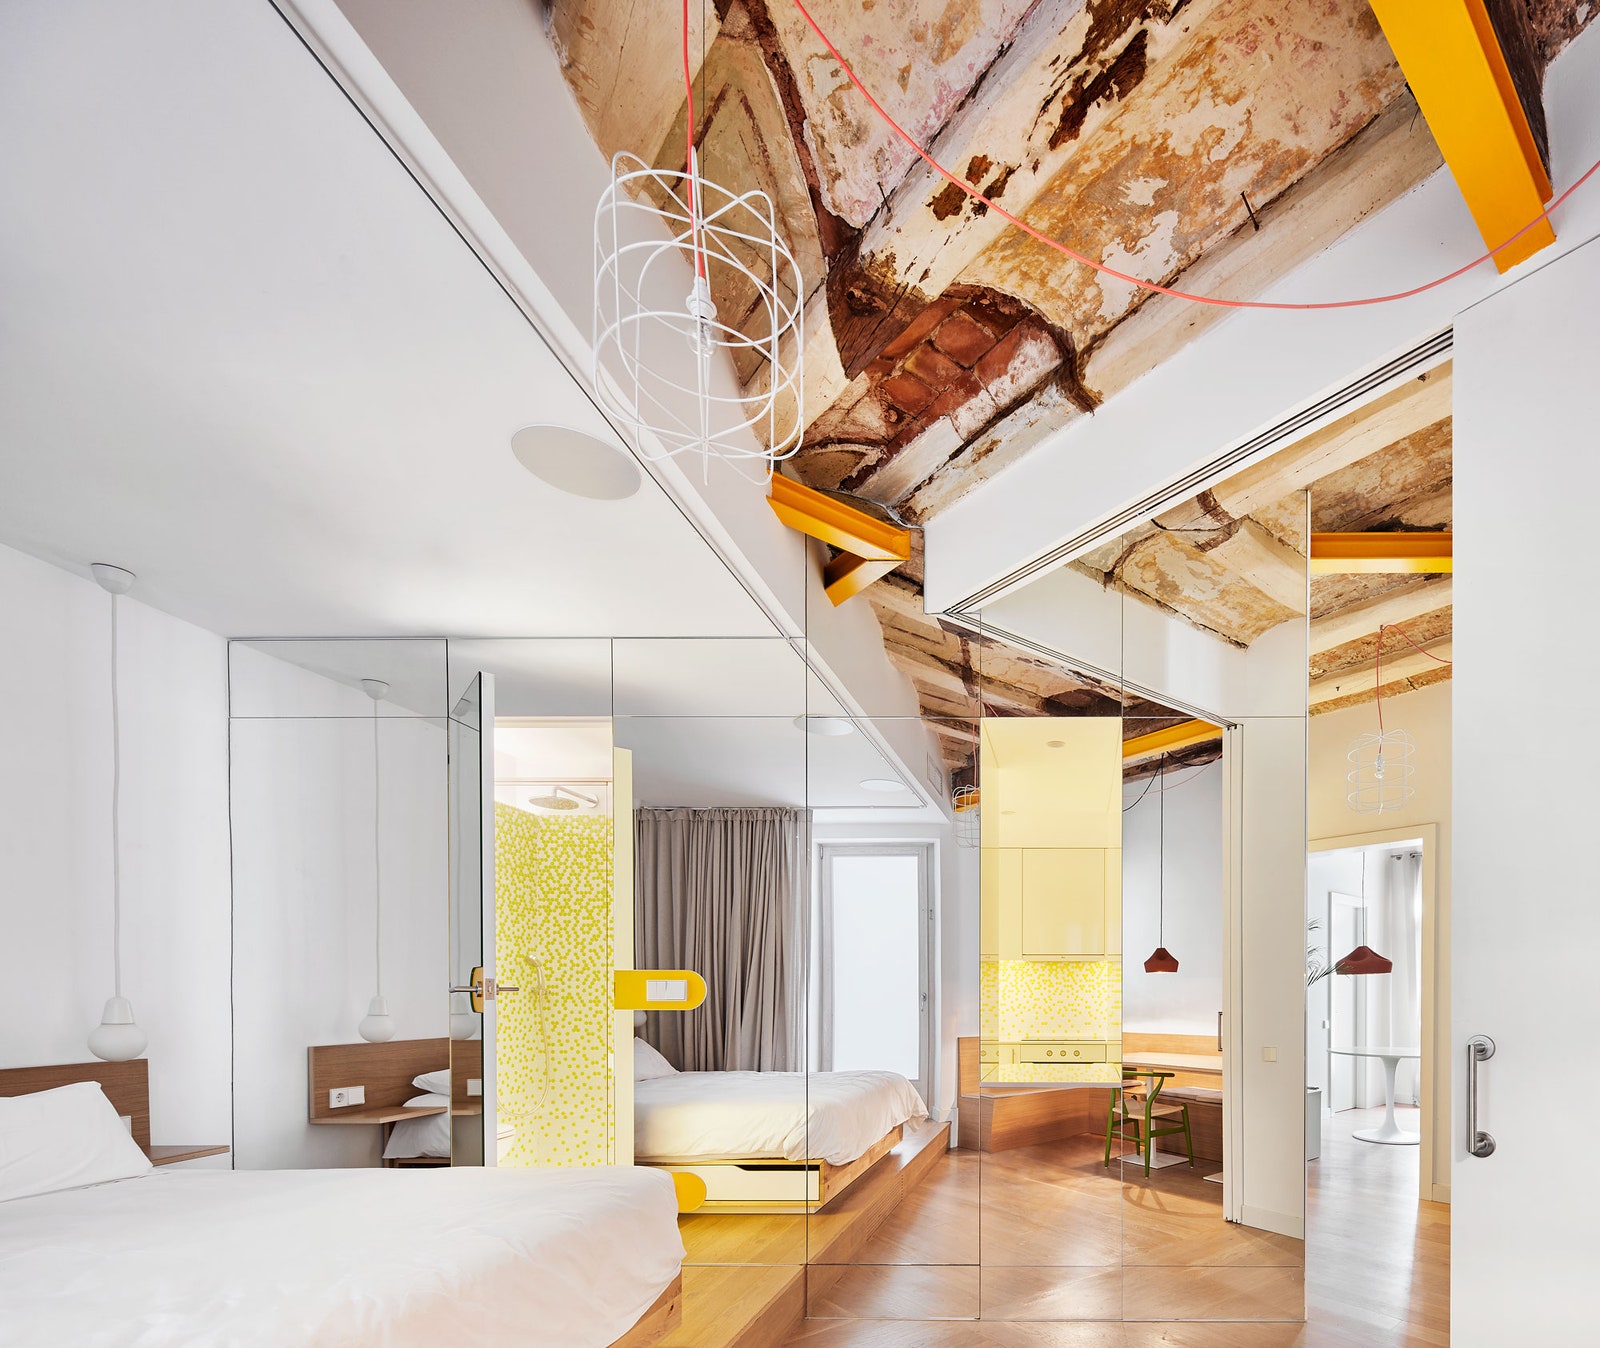 Интерьер квартиры в Барселоне по проекту студии Miel Arquitectos. На фоне светлых стен выделяются крупные акценты...